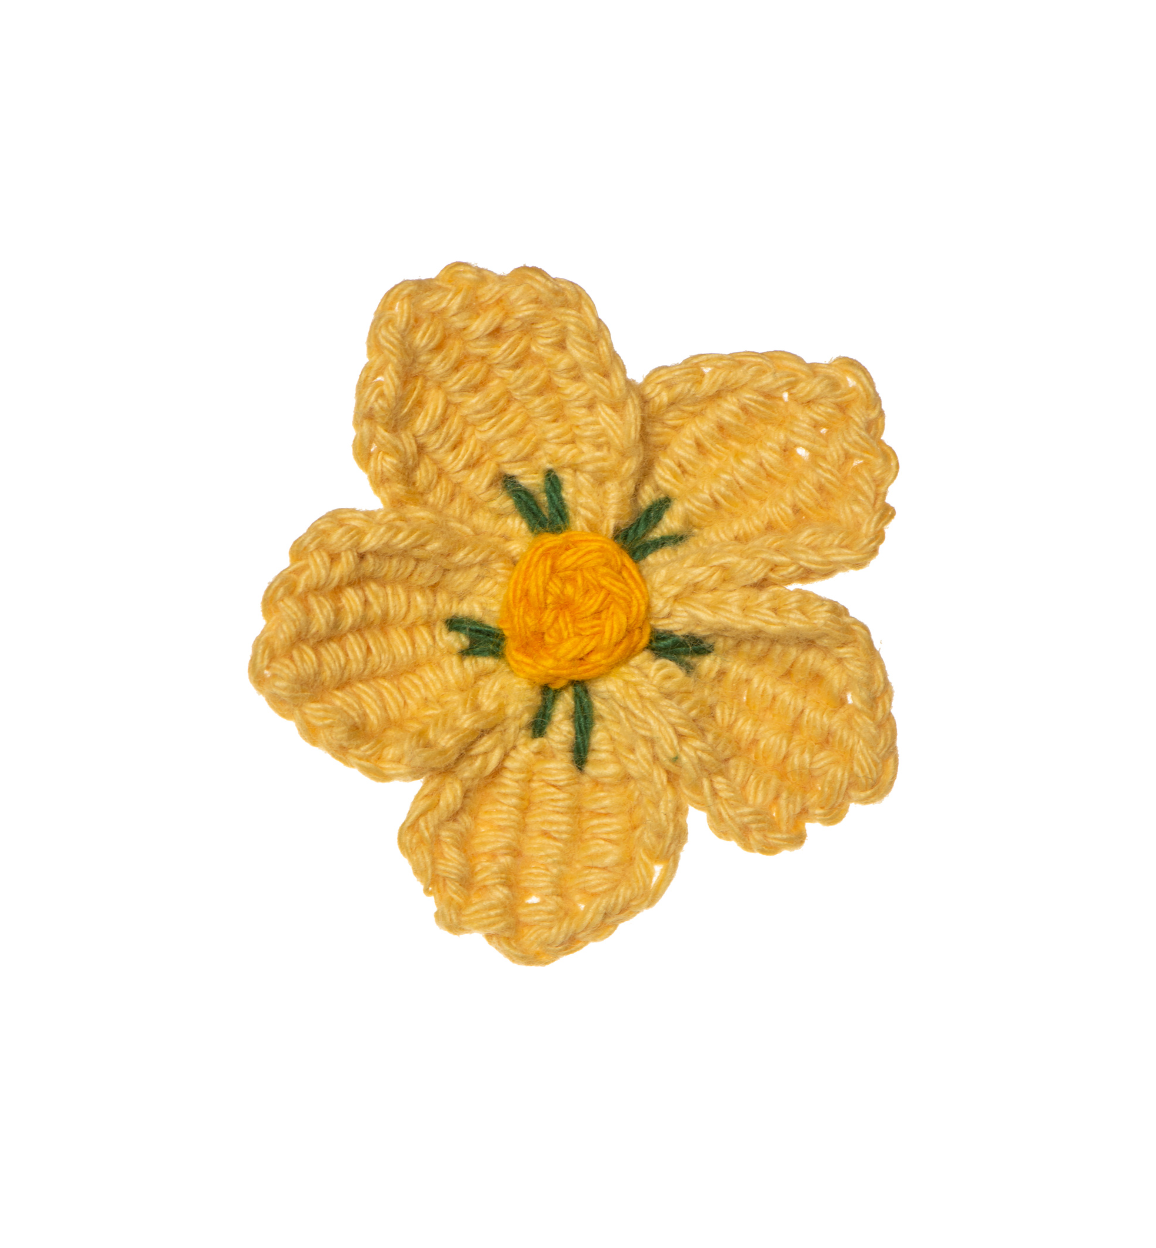 Crochet Sakura Flower Brooch